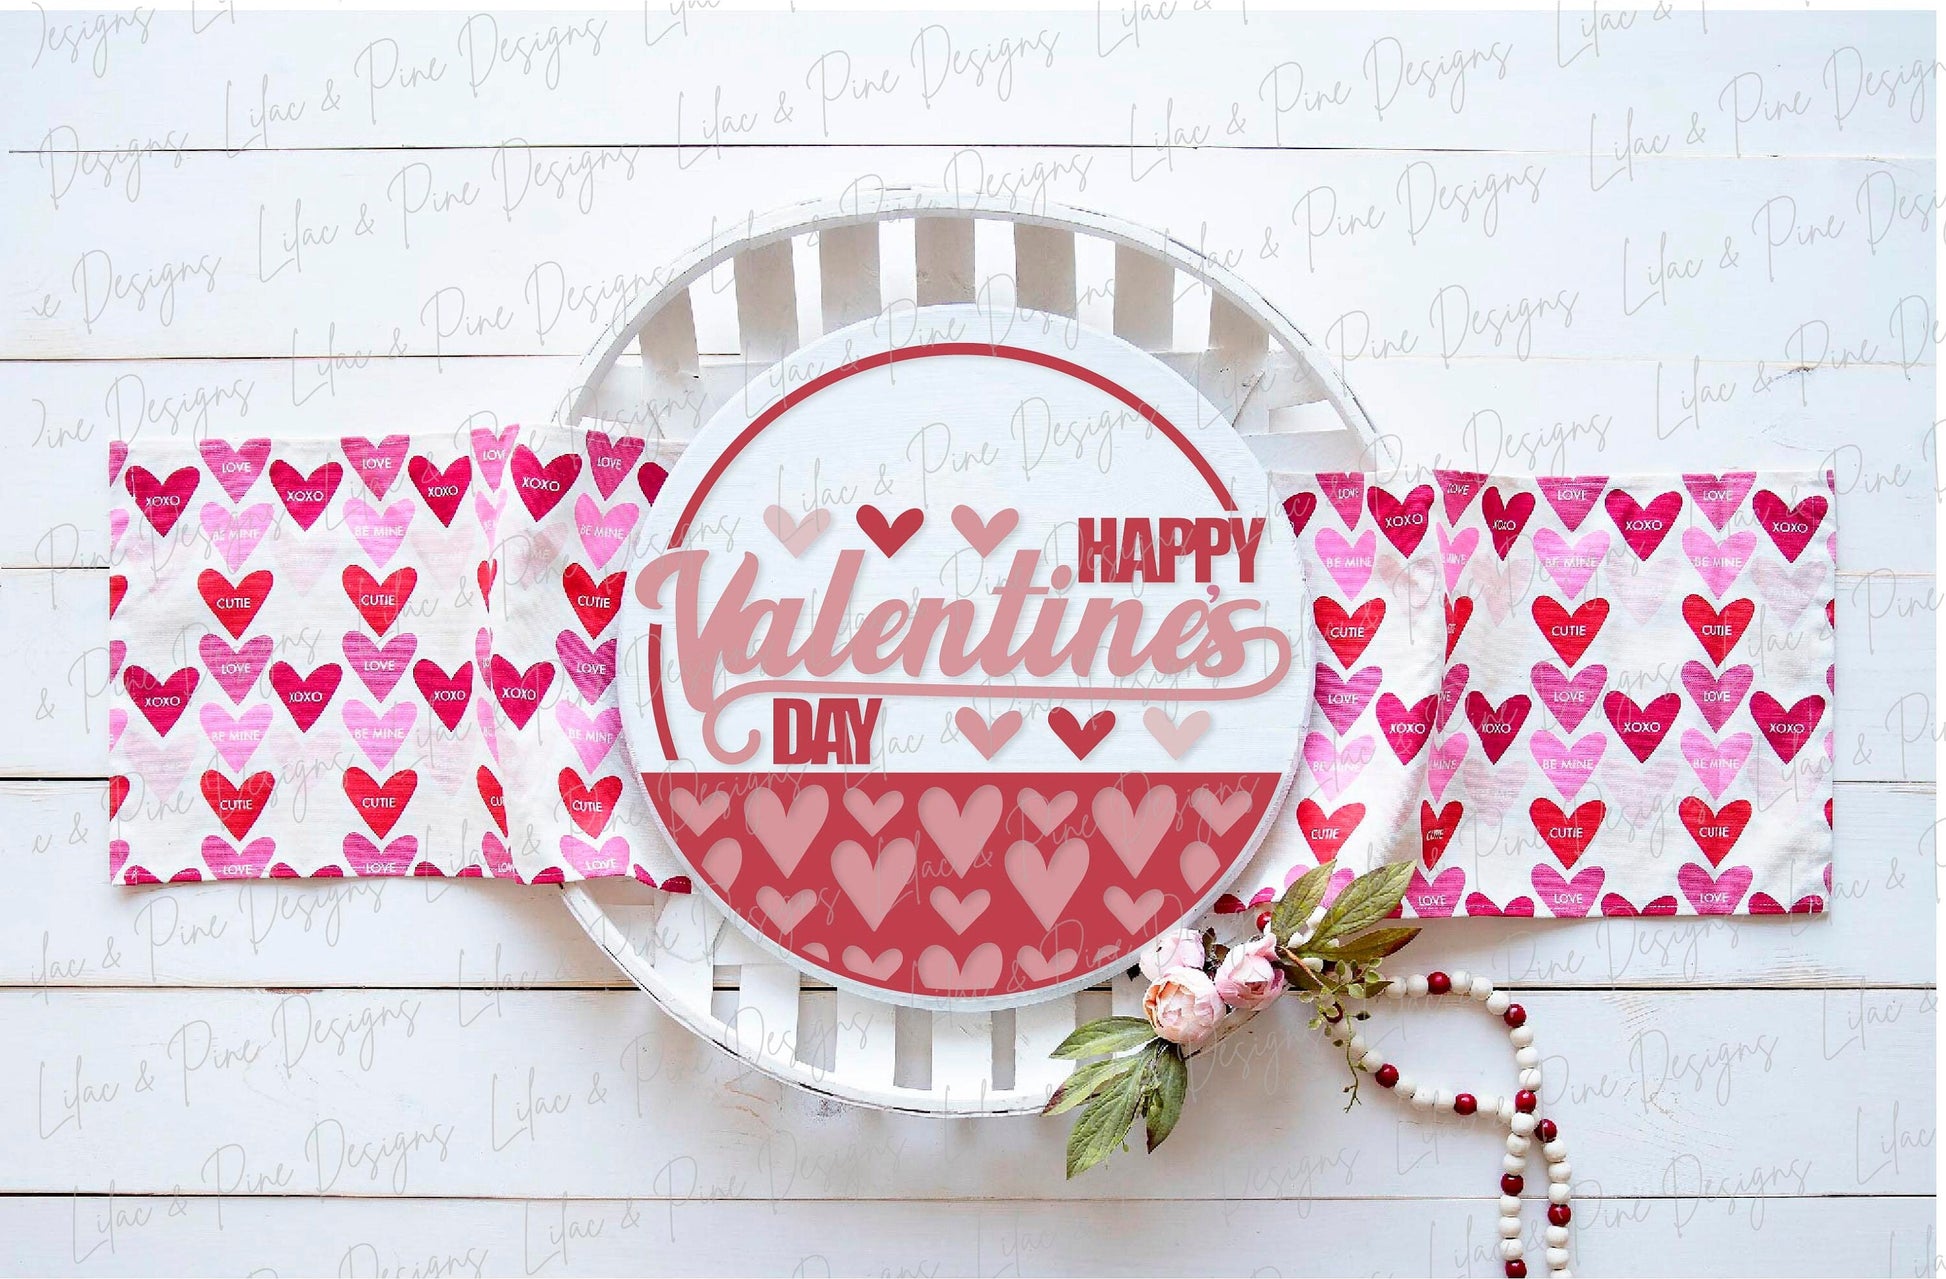 Happy Valentine's Day sign SVG, Valentine door hanger, Love Welcome round sign SVG, Valentine's Day decor, Glowforge SVG, laser cut file